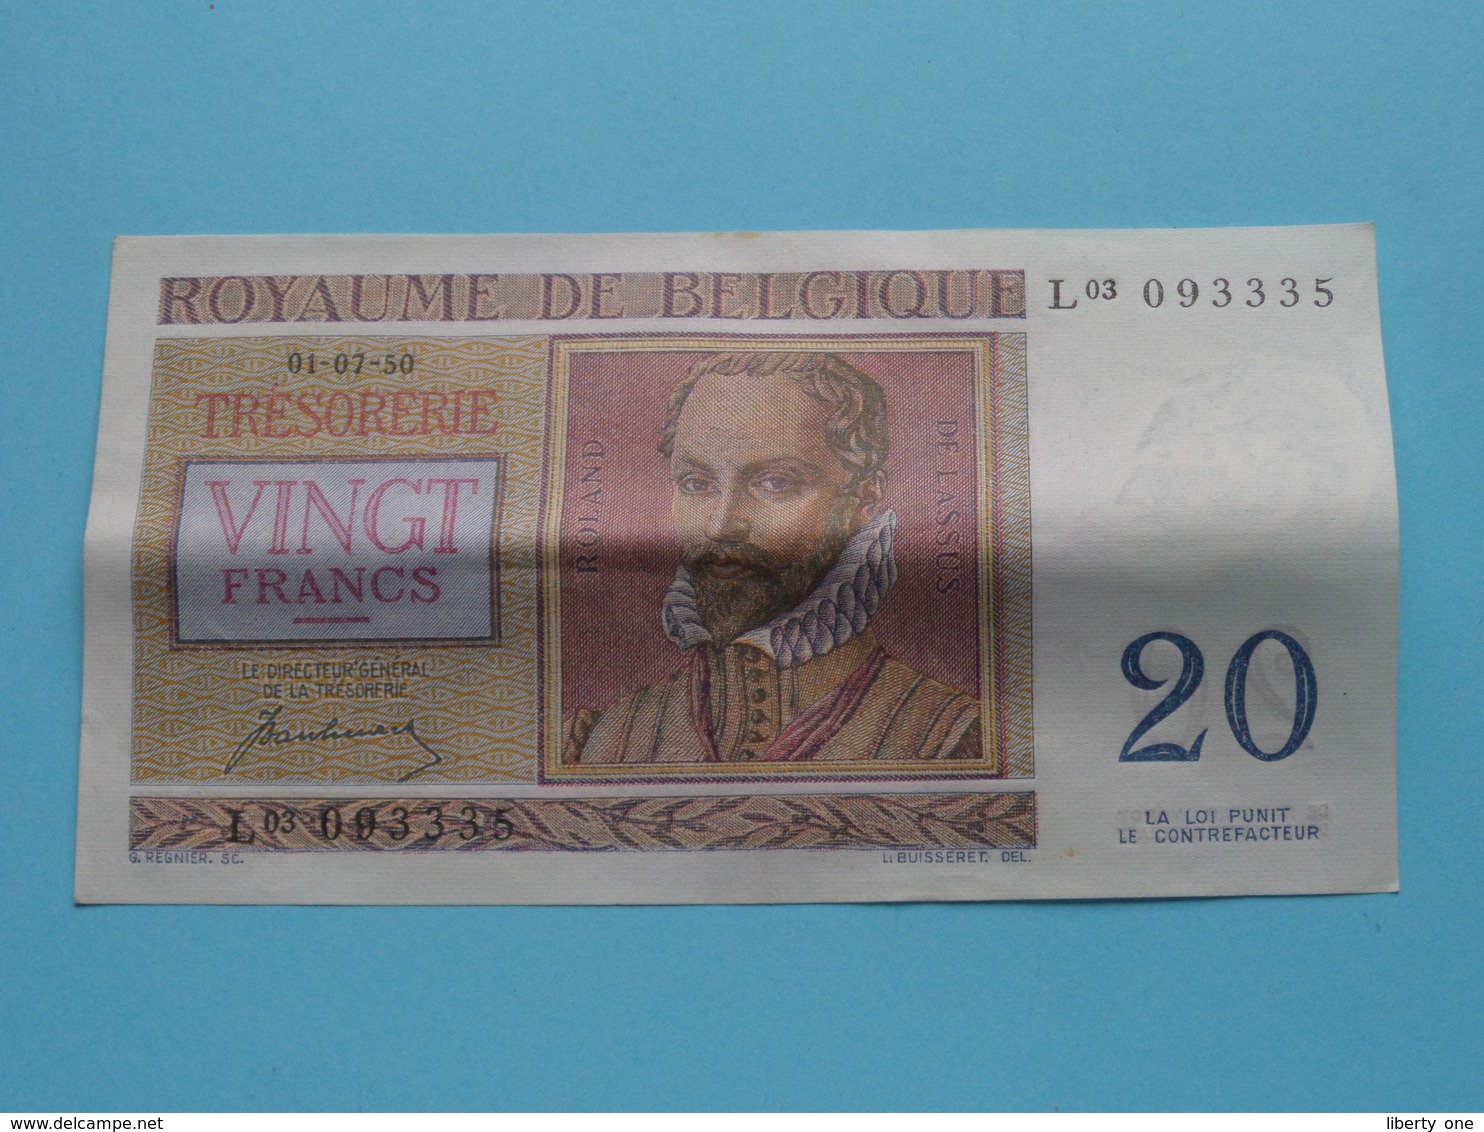 VINGT Francs TWINTIG Frank : L03 093335 ( Thesaurie / Trésorerie - Philippus De Monte ) 01-07-50 > Belgique/België ! - 20 Francs